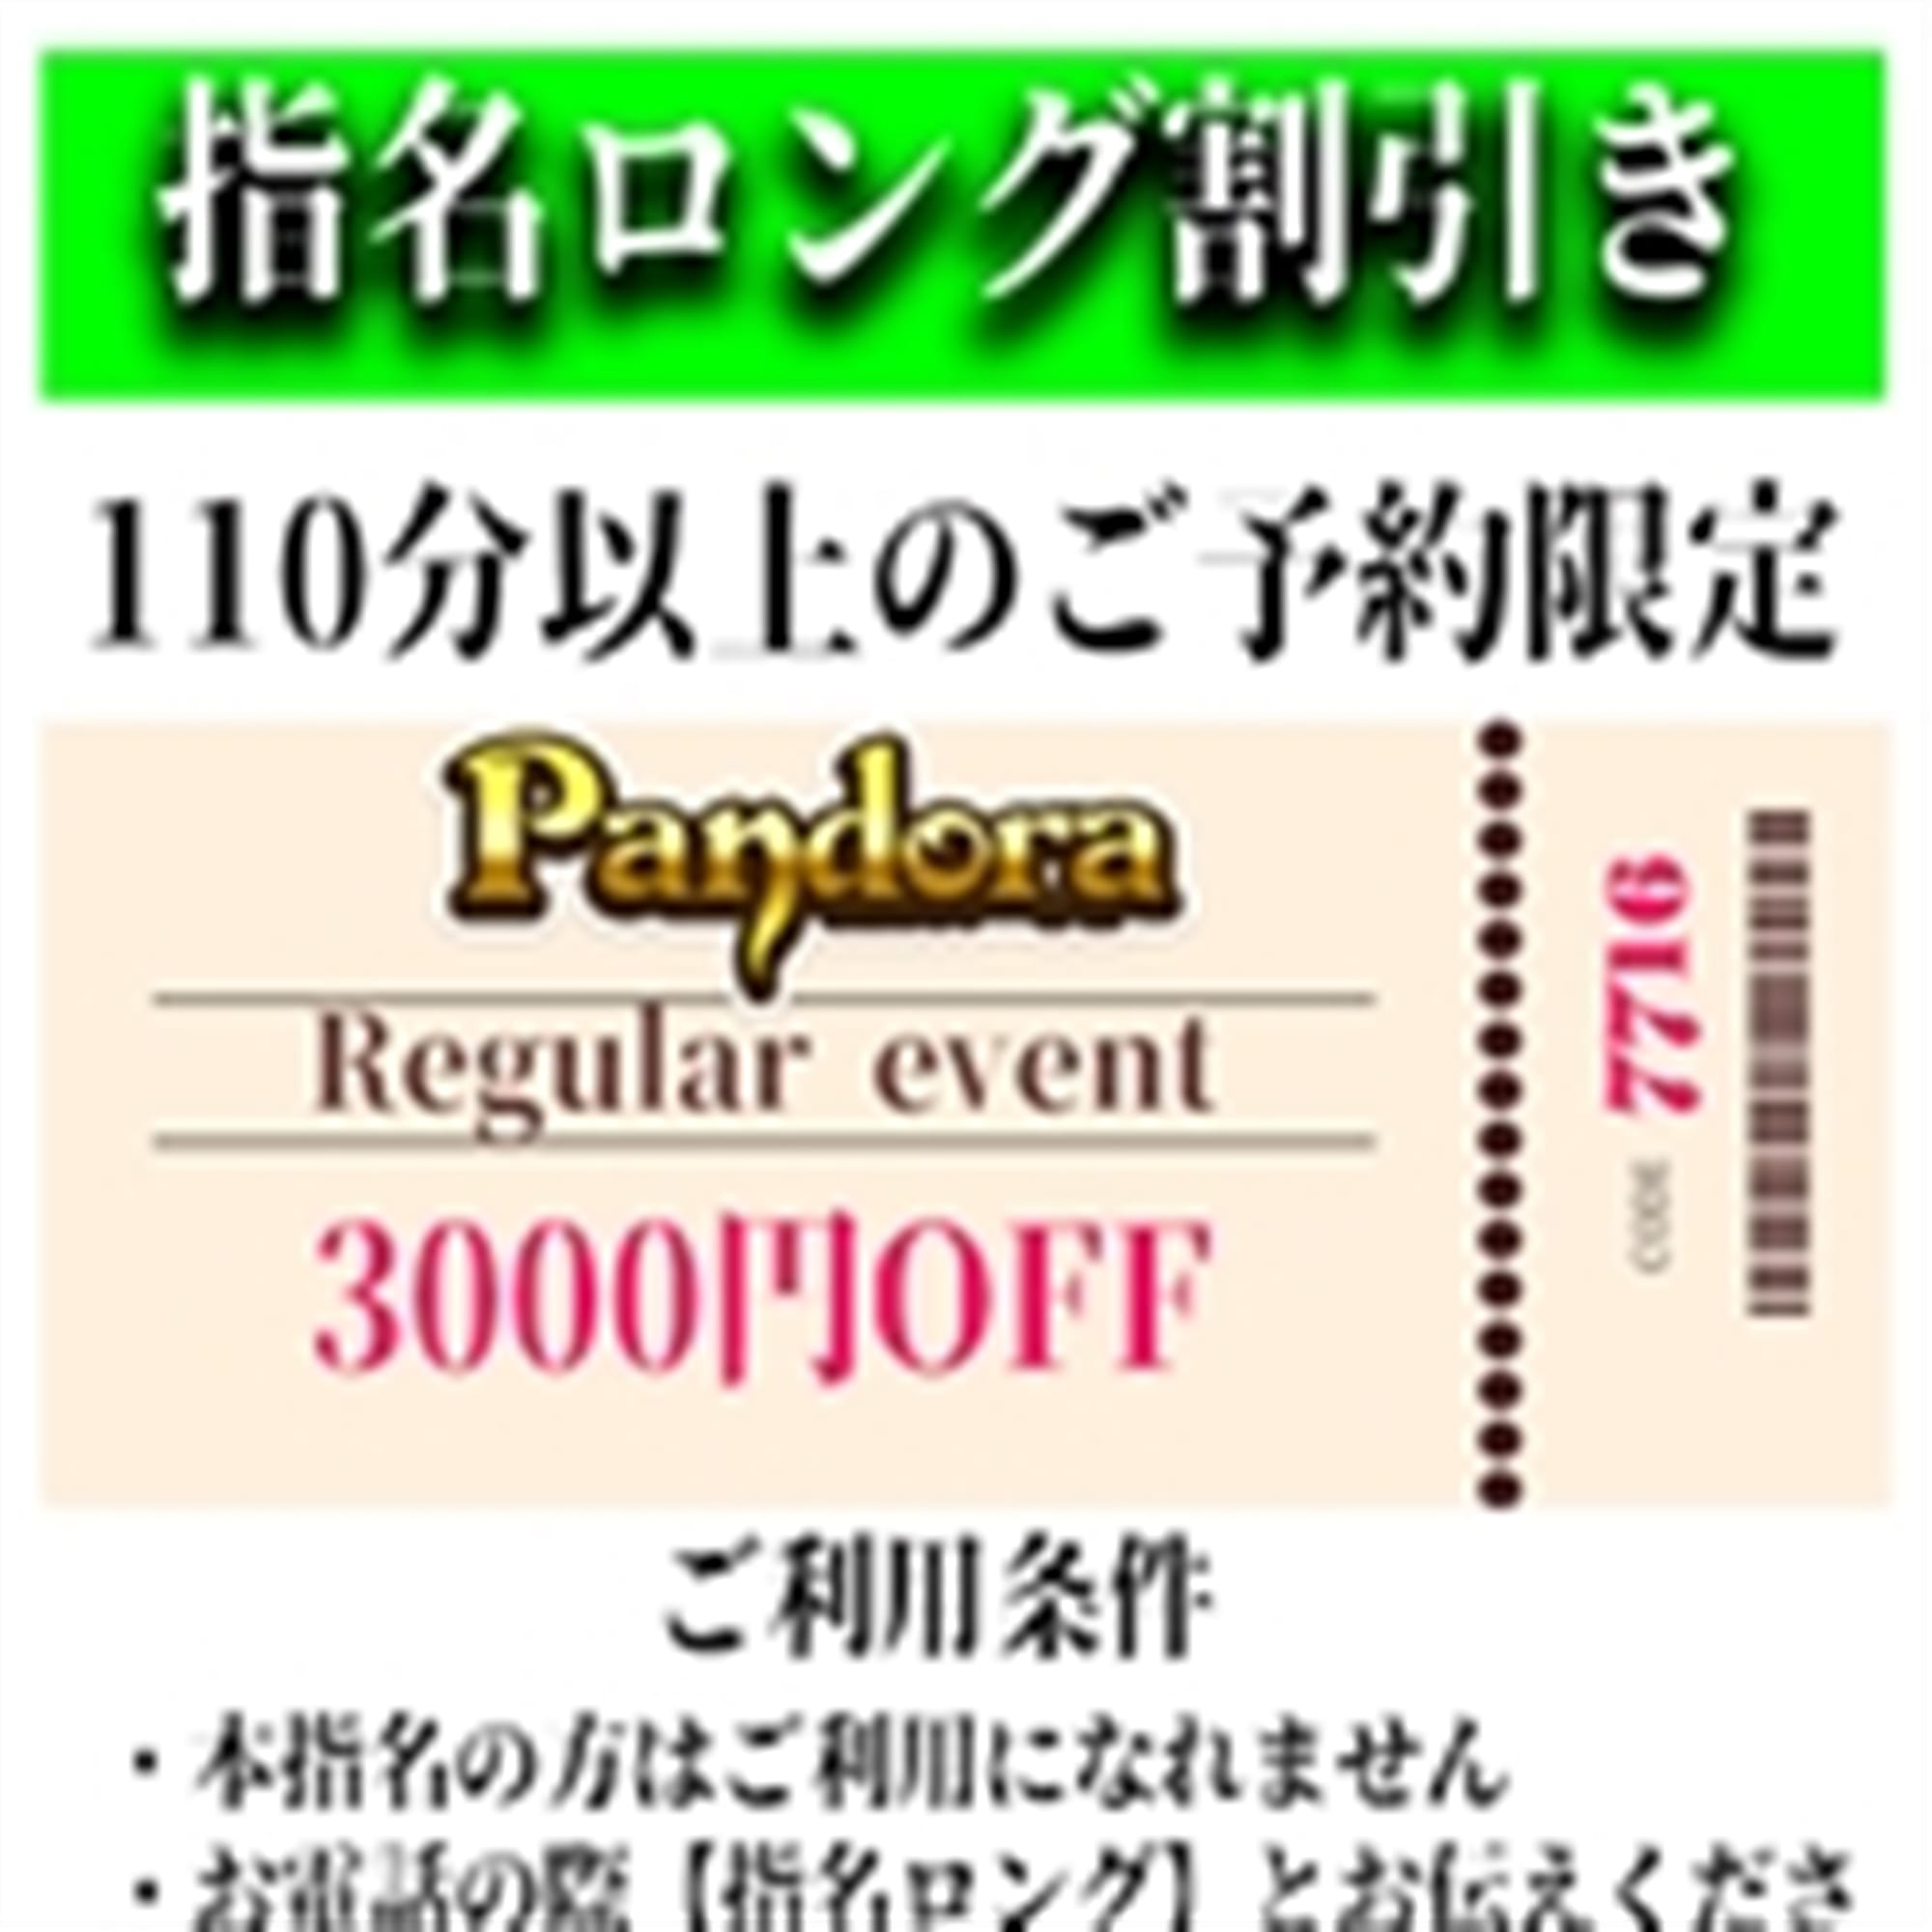 「ご指名のお客様も遊べるロングコース割引」04/26(金) 11:31 | Pandora(パンドラ)新潟のお得なニュース